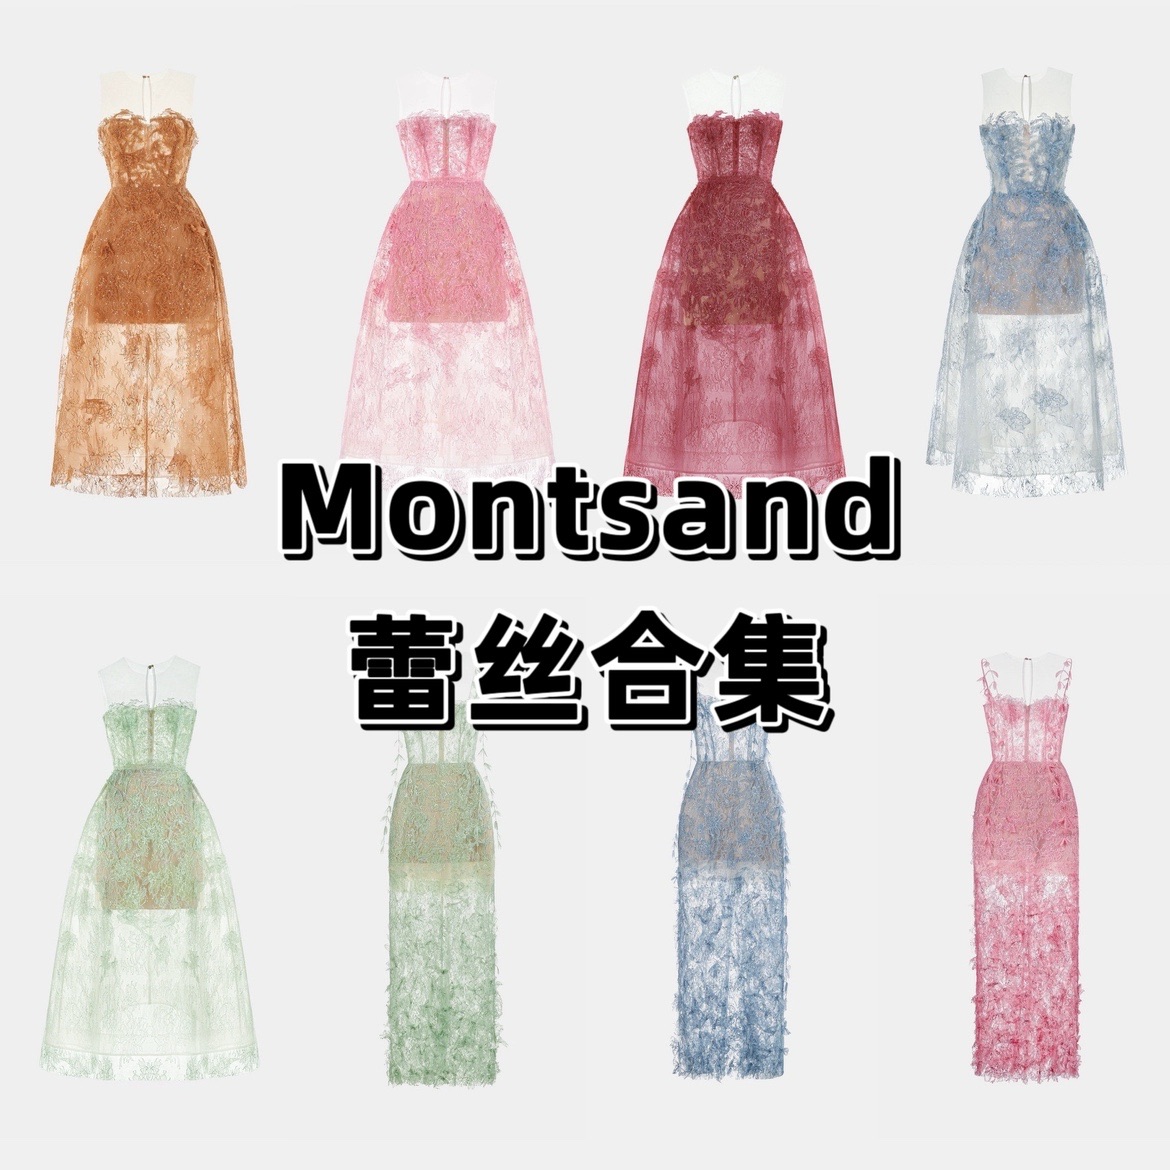 【蕾丝合集】Montsand官方正品授权蕾丝合集连衣裙越南设计度假